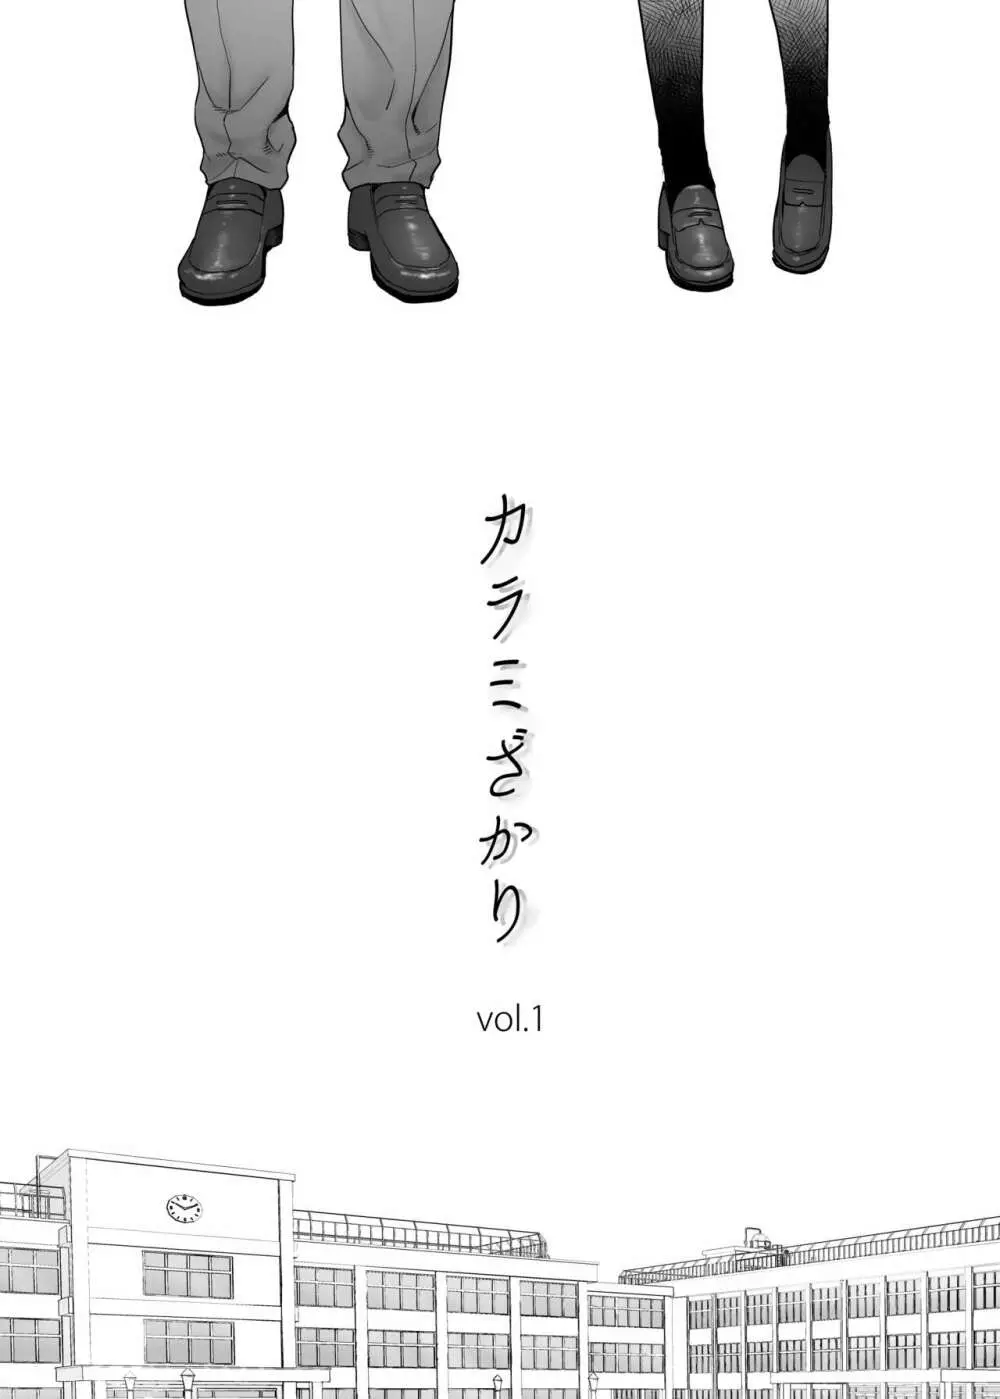 カラミざかり vol.1